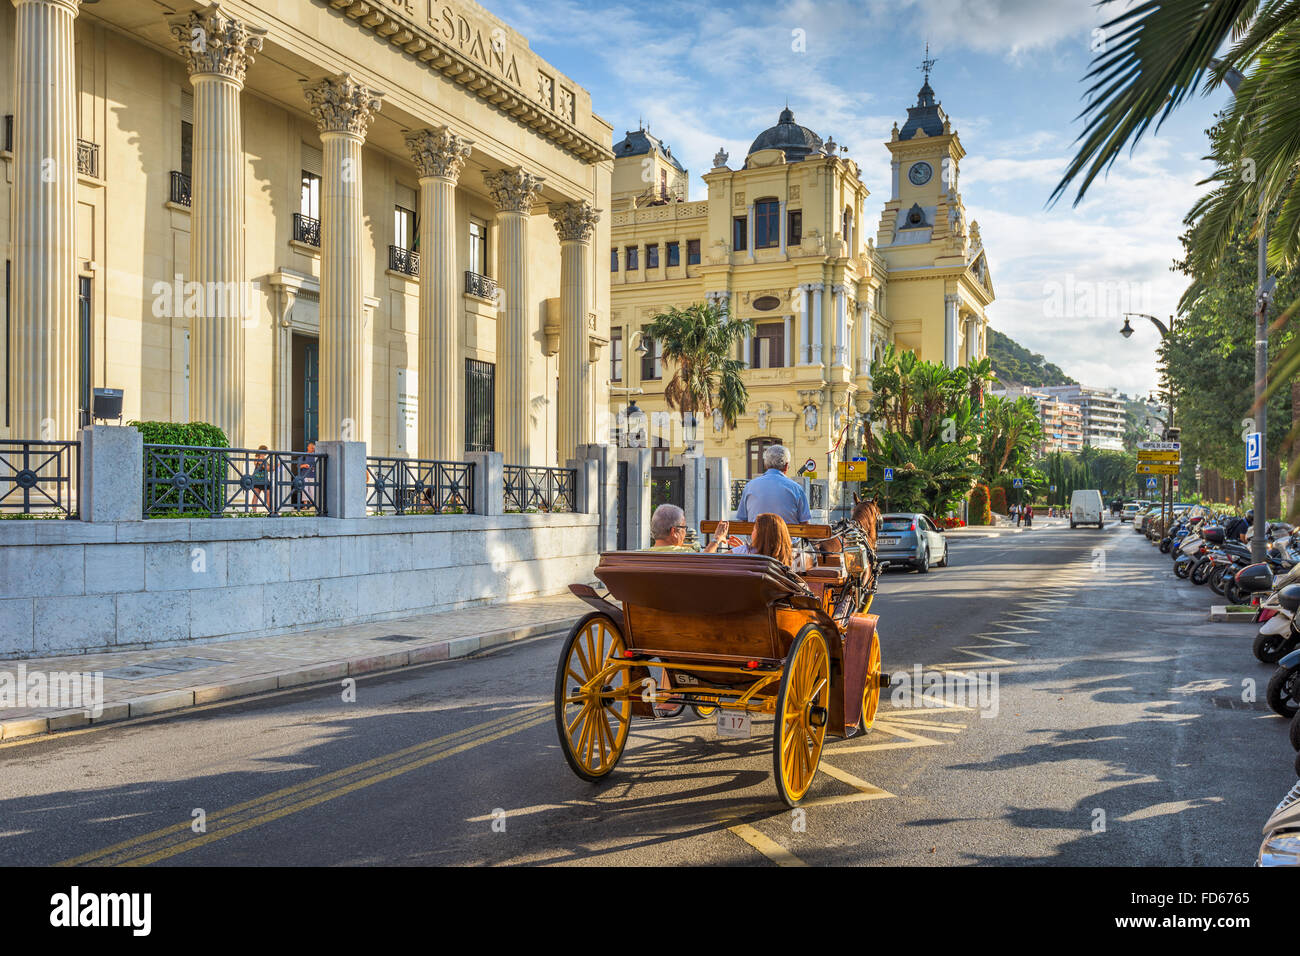 MALAGA, ESPAGNE - 2 NOVEMBRE 2014 : circulation près de l'hôtel de ville de Malaga, Espagne. Banque D'Images